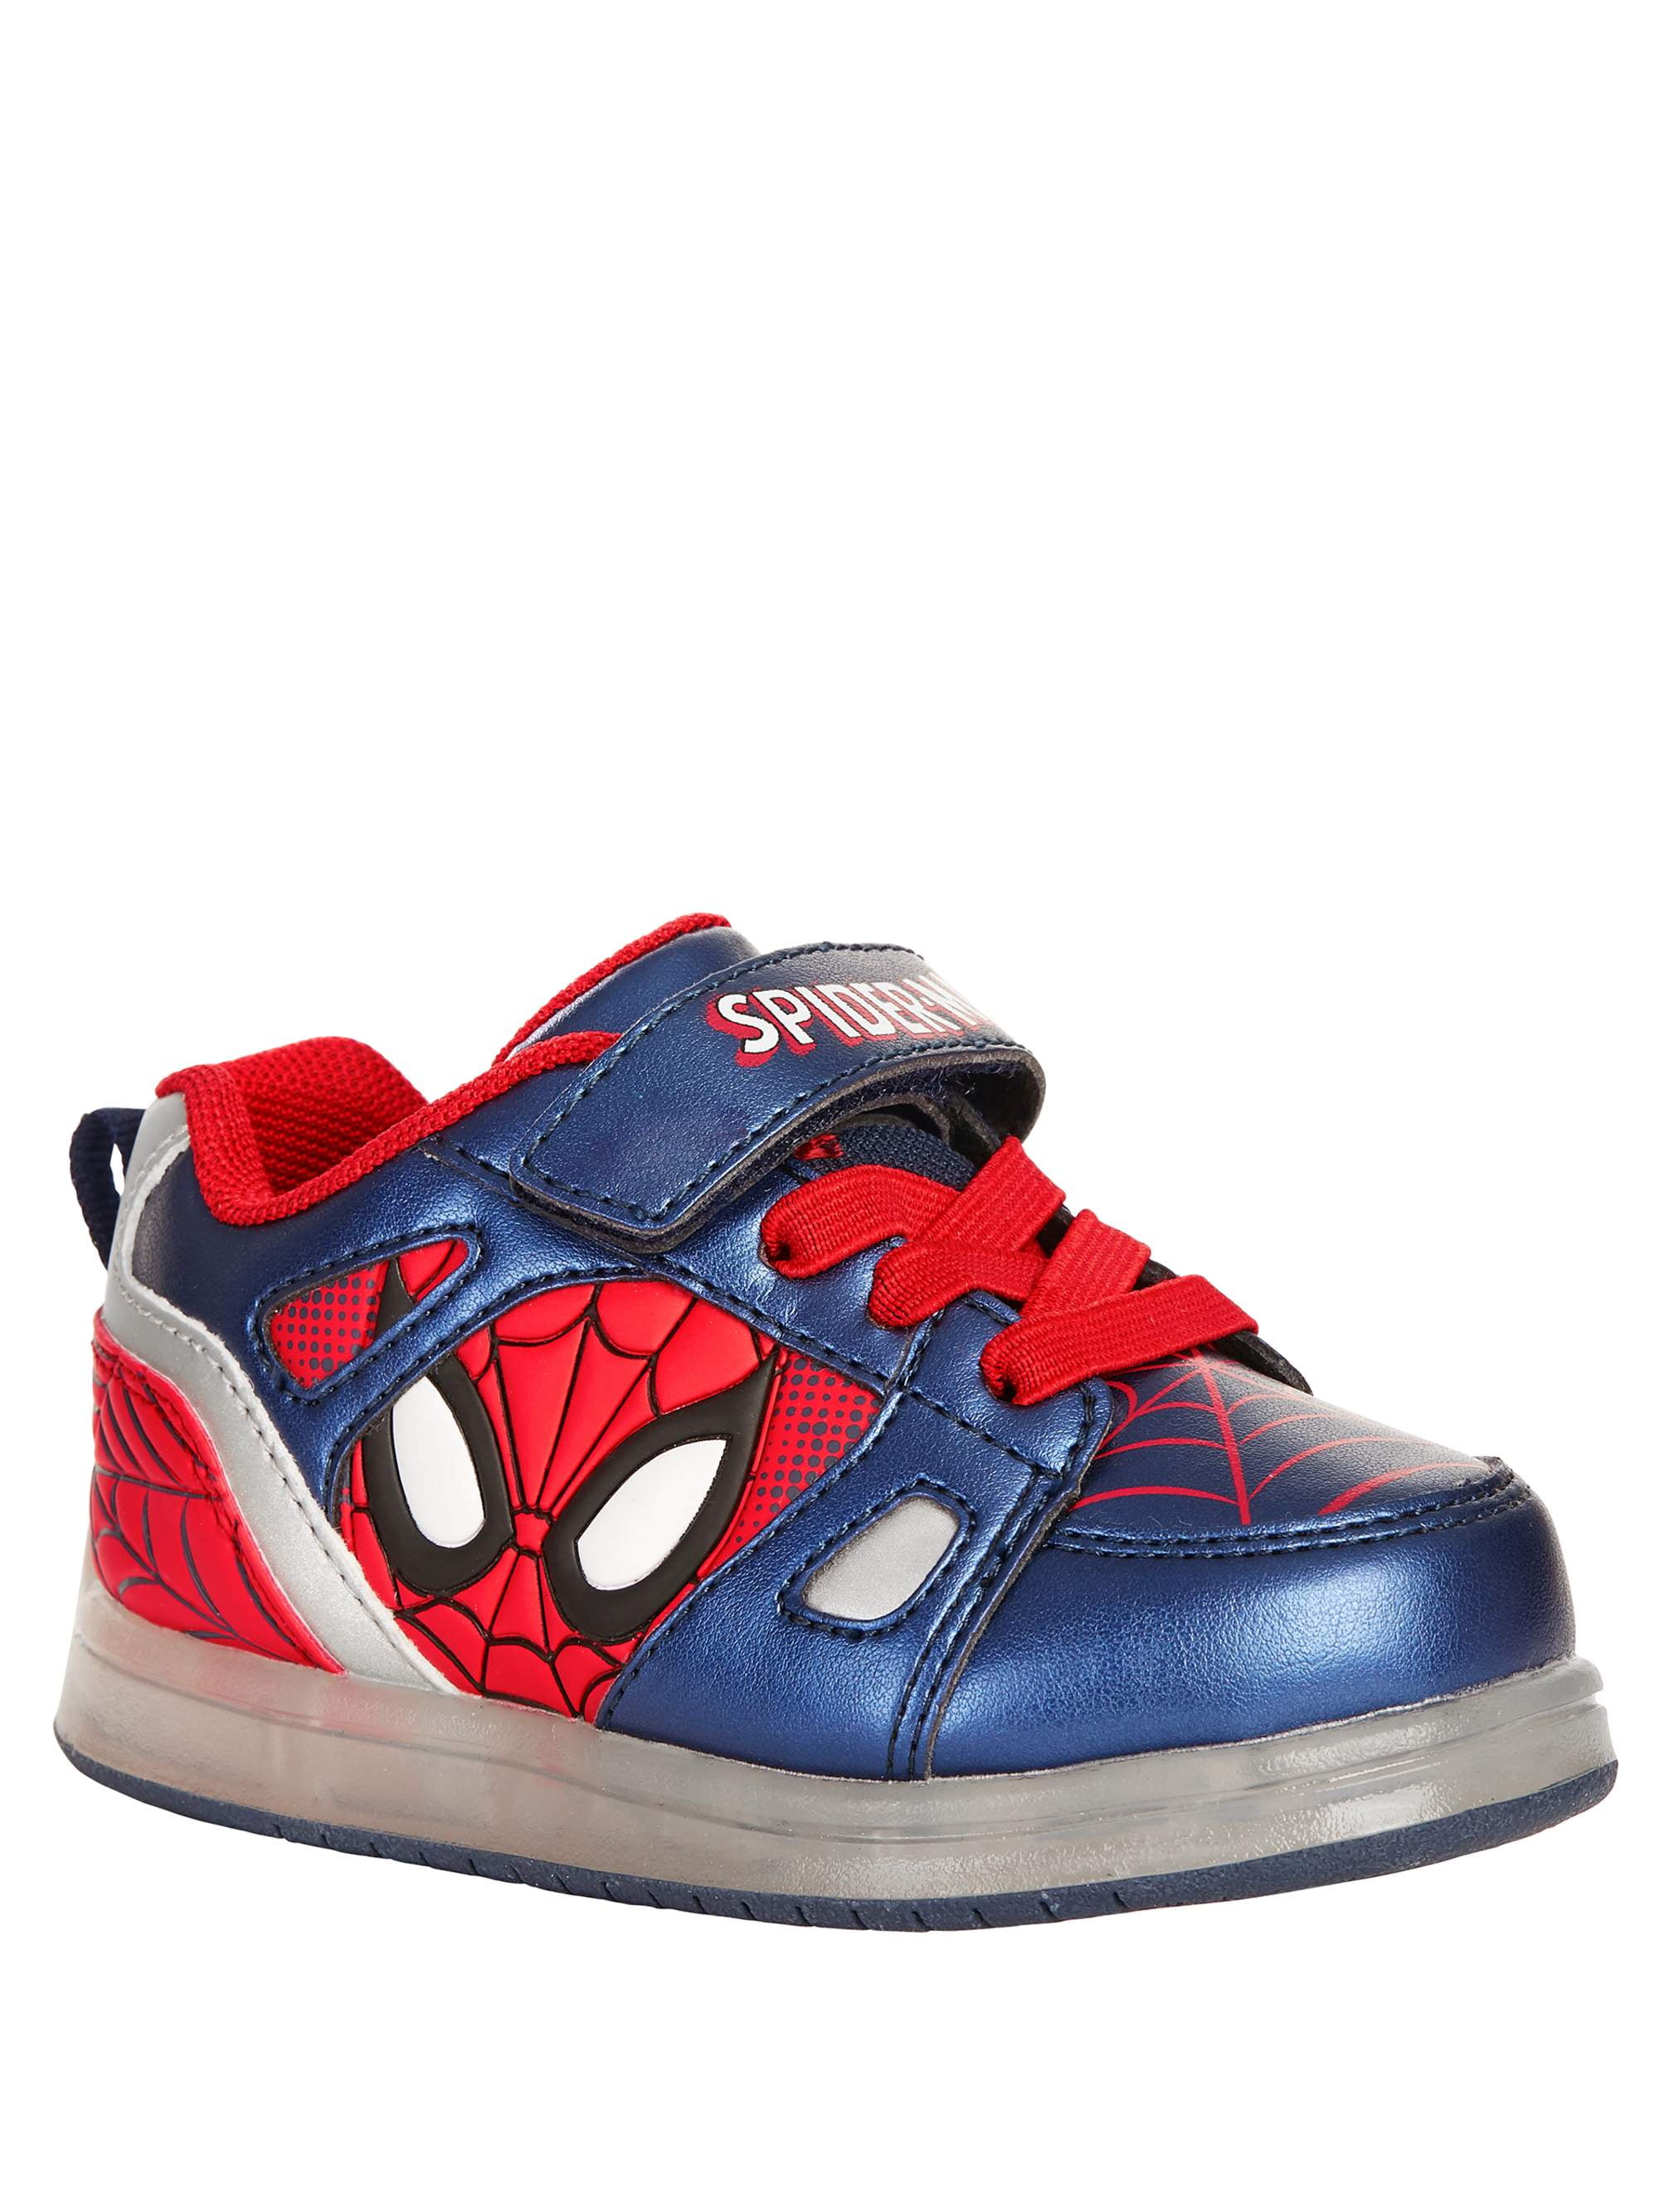 Spider-Man Toddler Boys' Licensed Lighted Athletic Shoe - Walmart.com